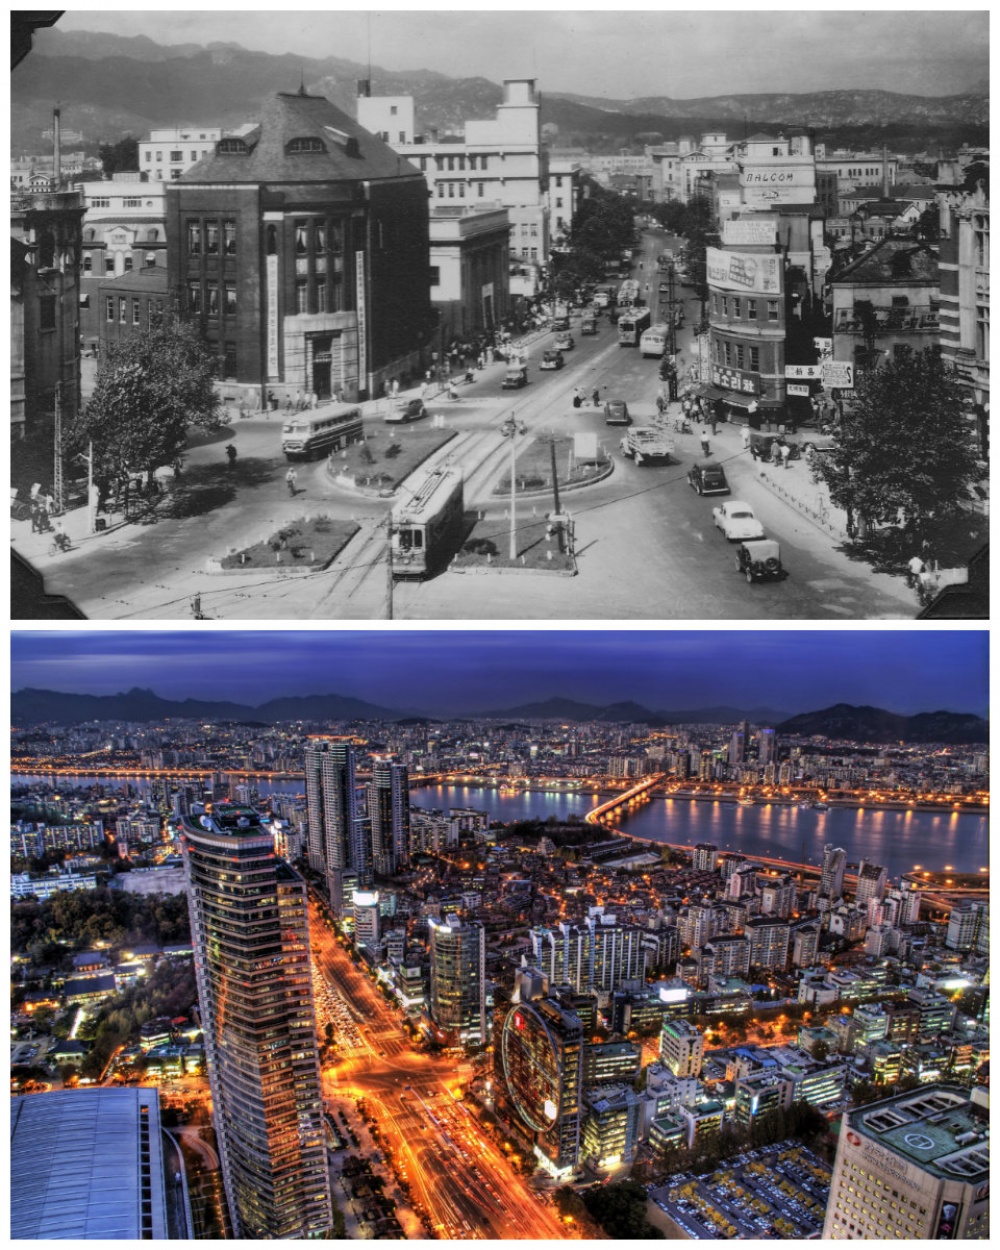 Η εκπληκτική αλλαγή των μεγαλύτερων πόλεων με το πέρασμα του χρόνου - Εικόνα 6